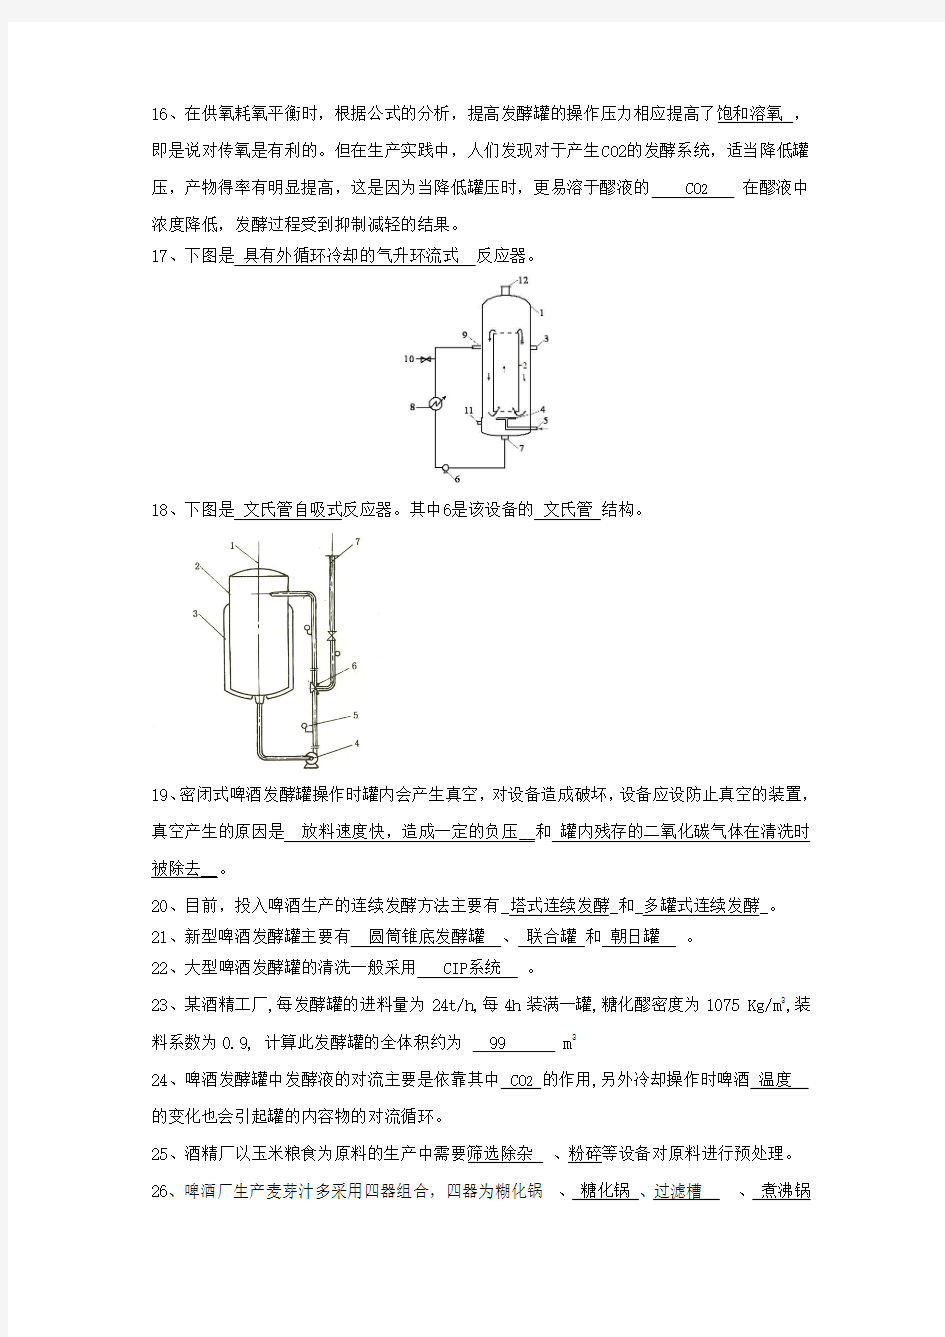 广州大学生物工程设备试题(填空题)